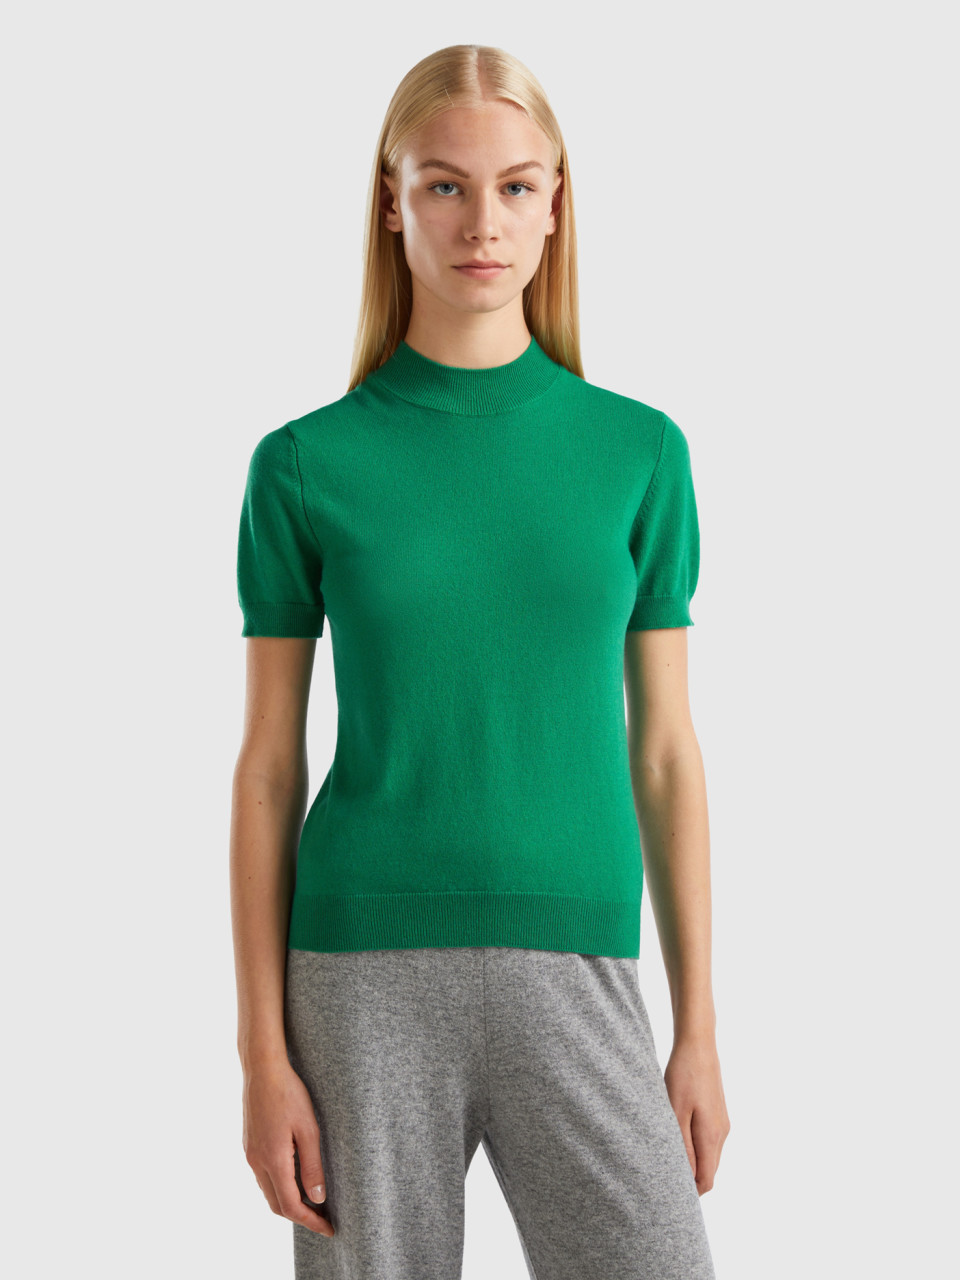 Benetton, Forest Green Short Sleeve Sweater In Cashmere Blend, Green, Women